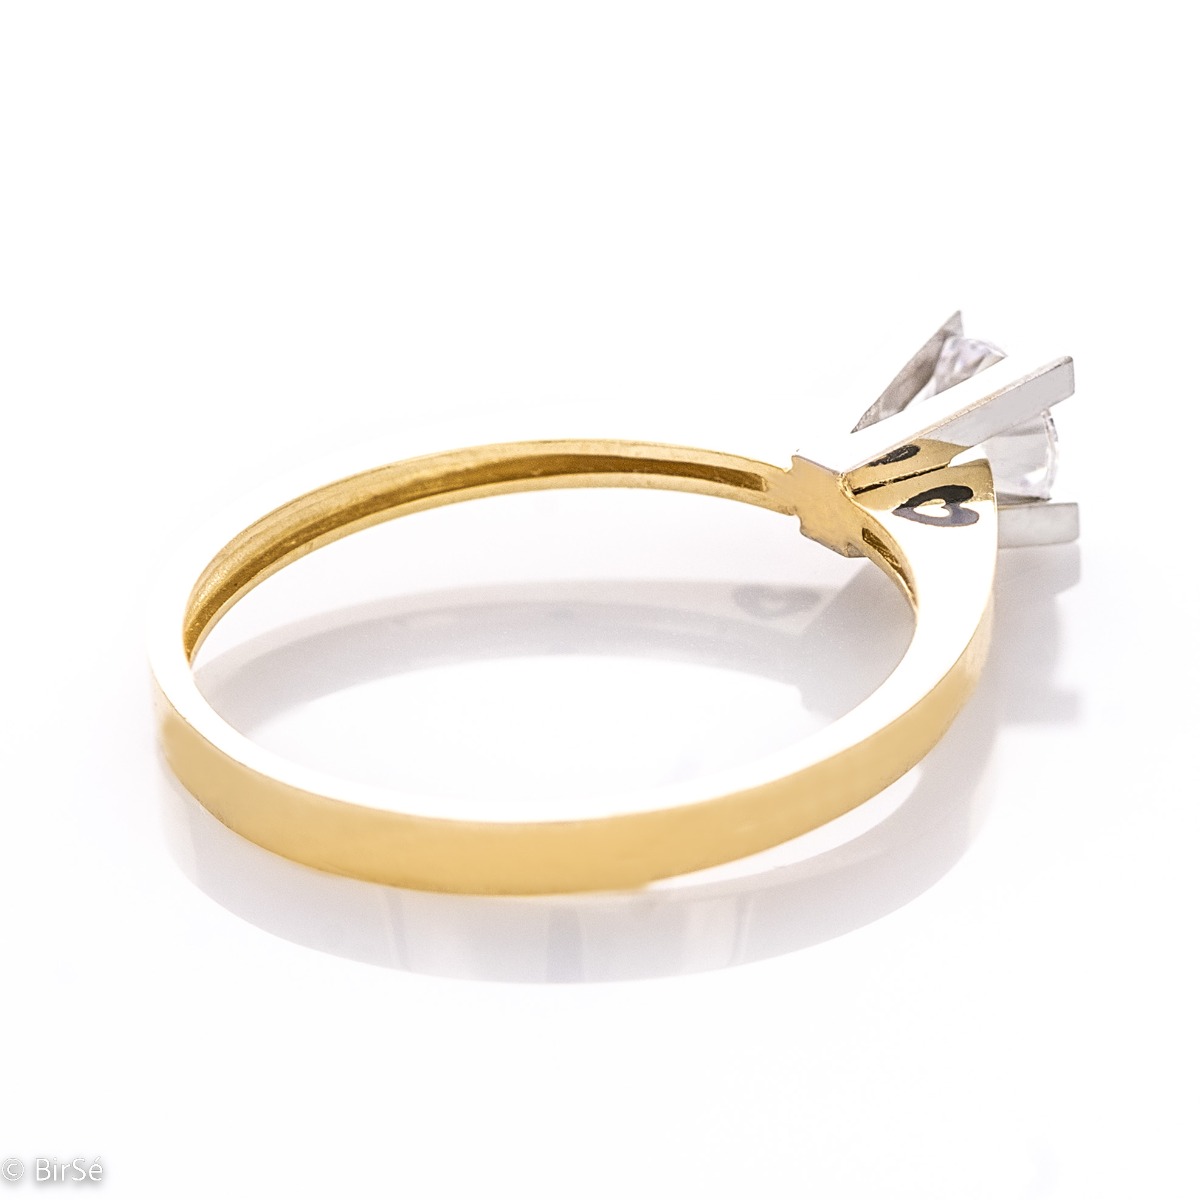 Златен пръстен - Сърчице